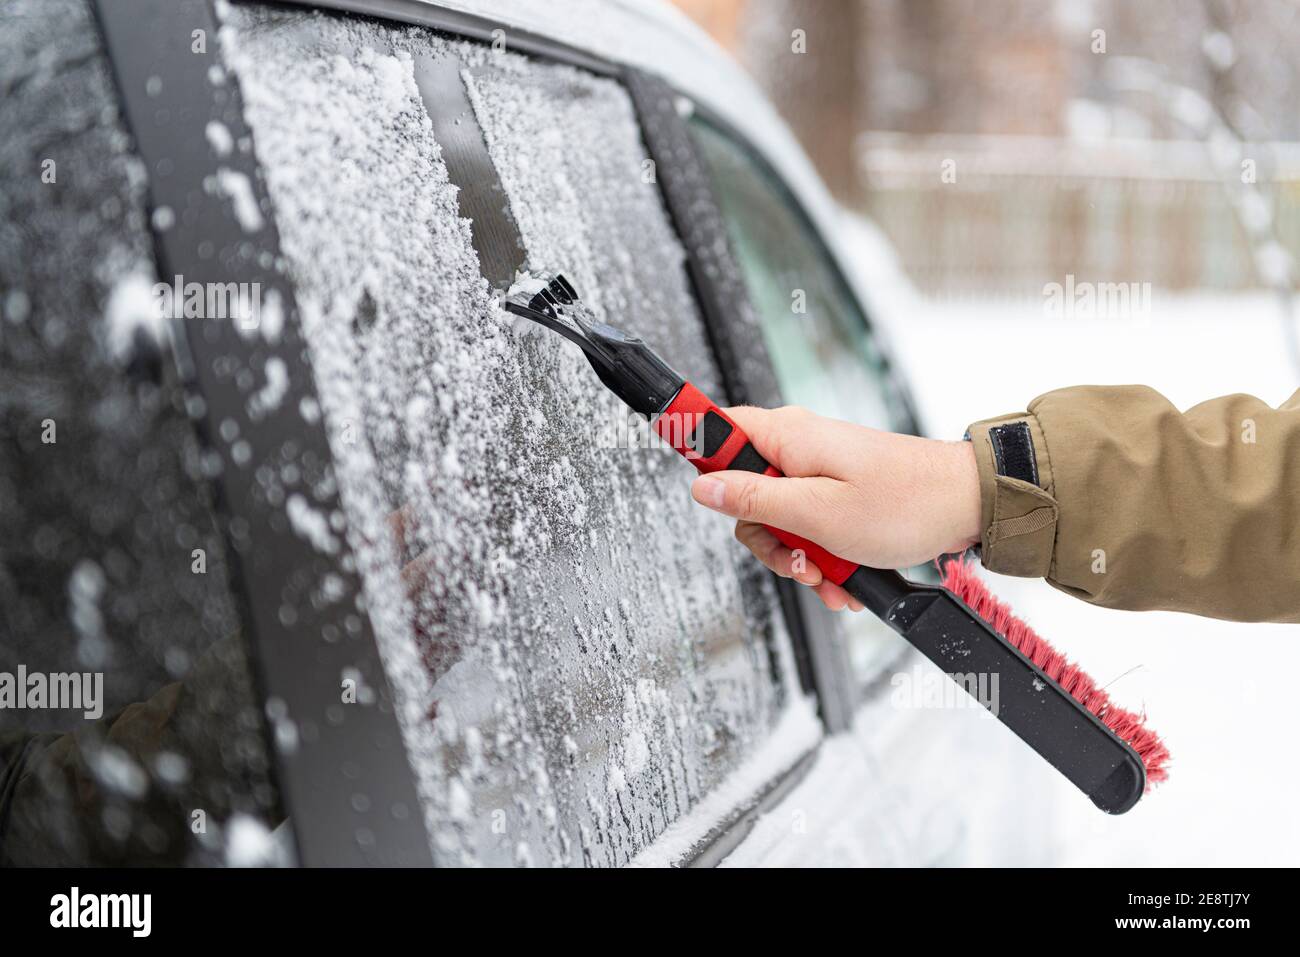 Autofahrer Hand mit Bürste oder Schaber entfernt Schnee und Eis aus dem Autoglas nach starkem Schneefall. Schlechte Wettervorhersage für das Fahren. Sicherheit auf der Straße c Stockfoto